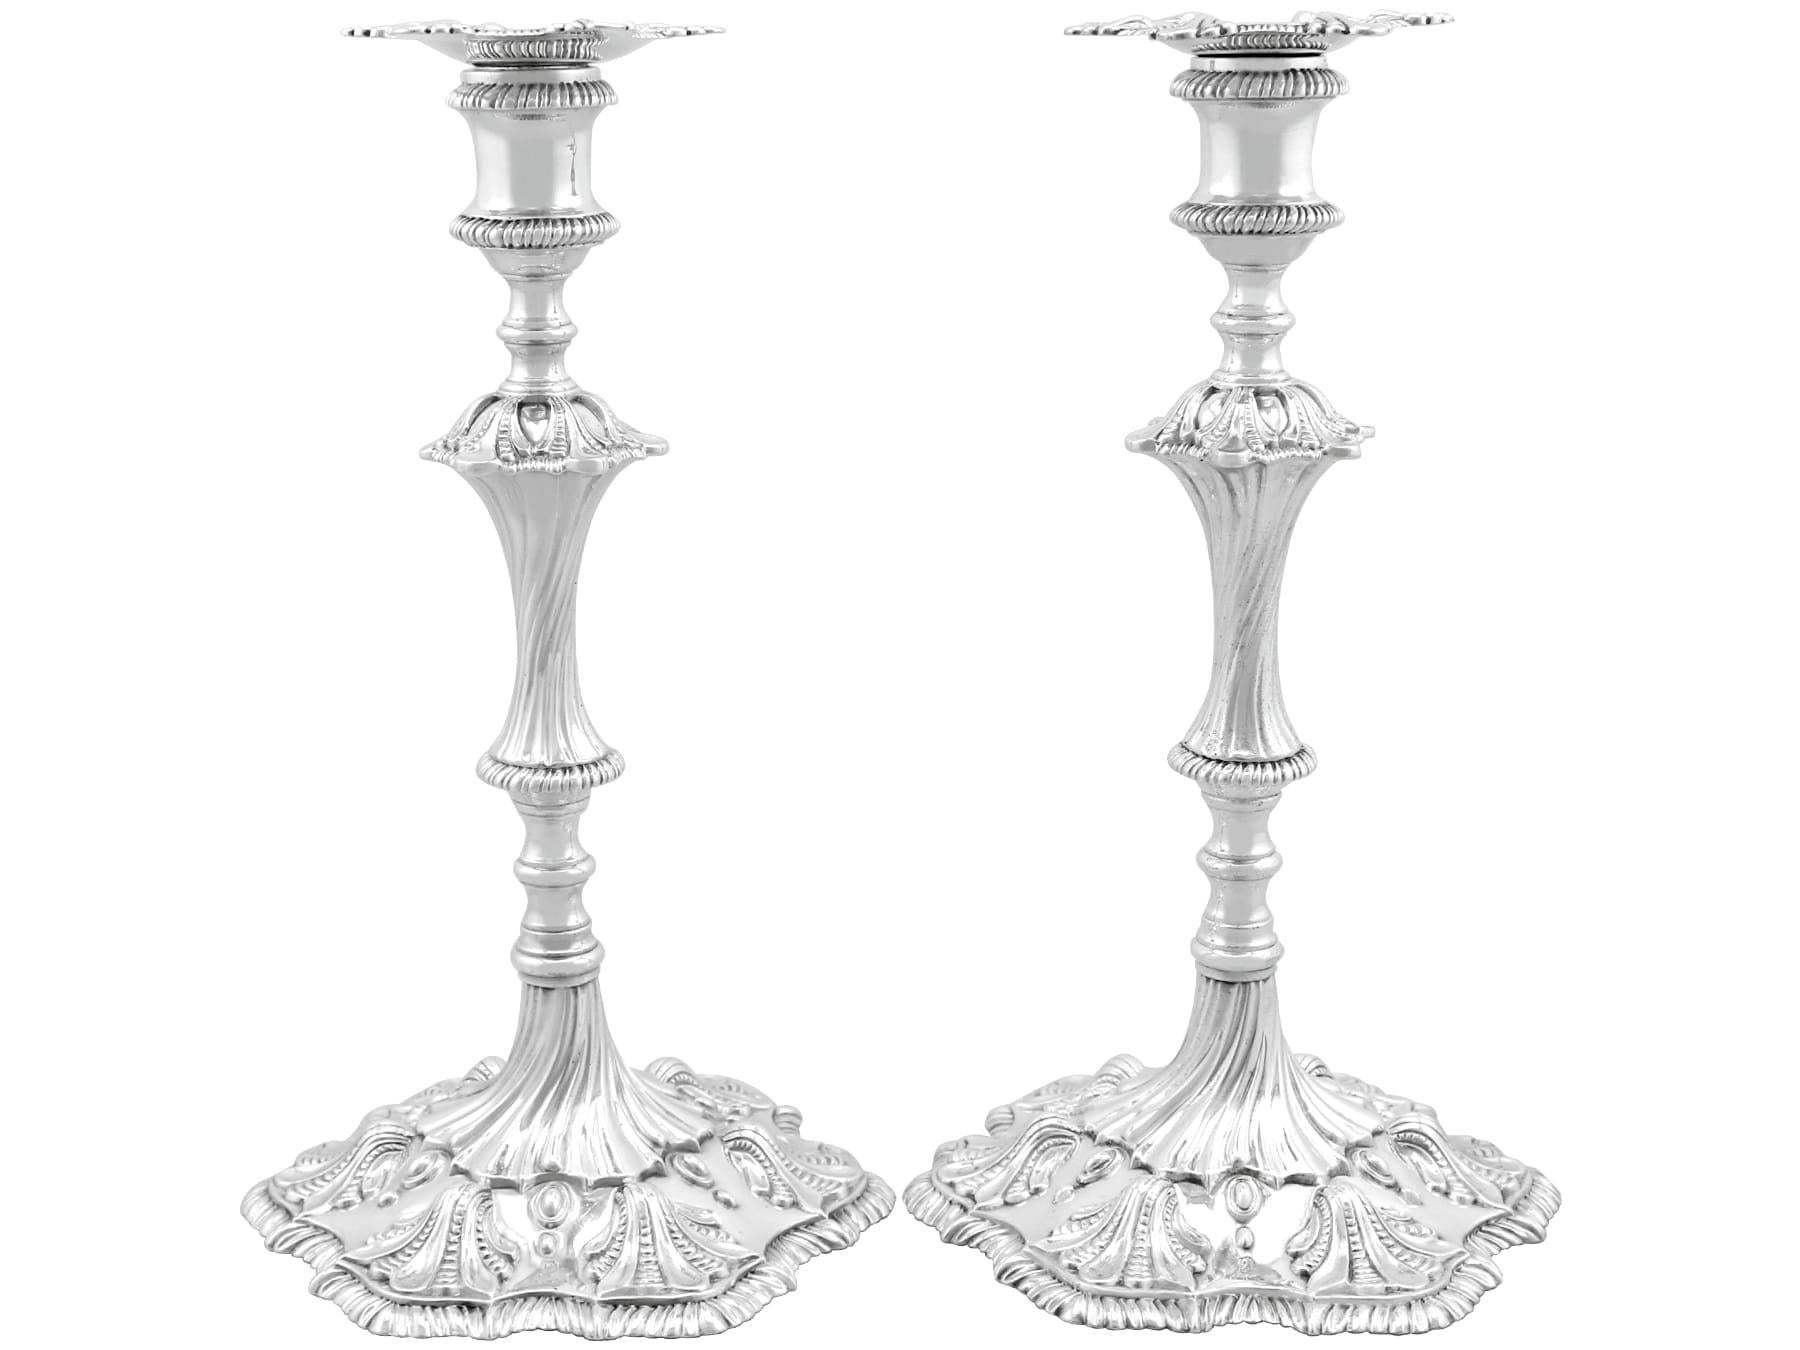 Une magnifique, fine et impressionnante paire de chandeliers anciens en argent sterling coulé de George III anglais, fabriqués par Edmund Vincent ; un ajout à notre collection d'argenterie ornementale.

Ces magnifiques chandeliers anciens en